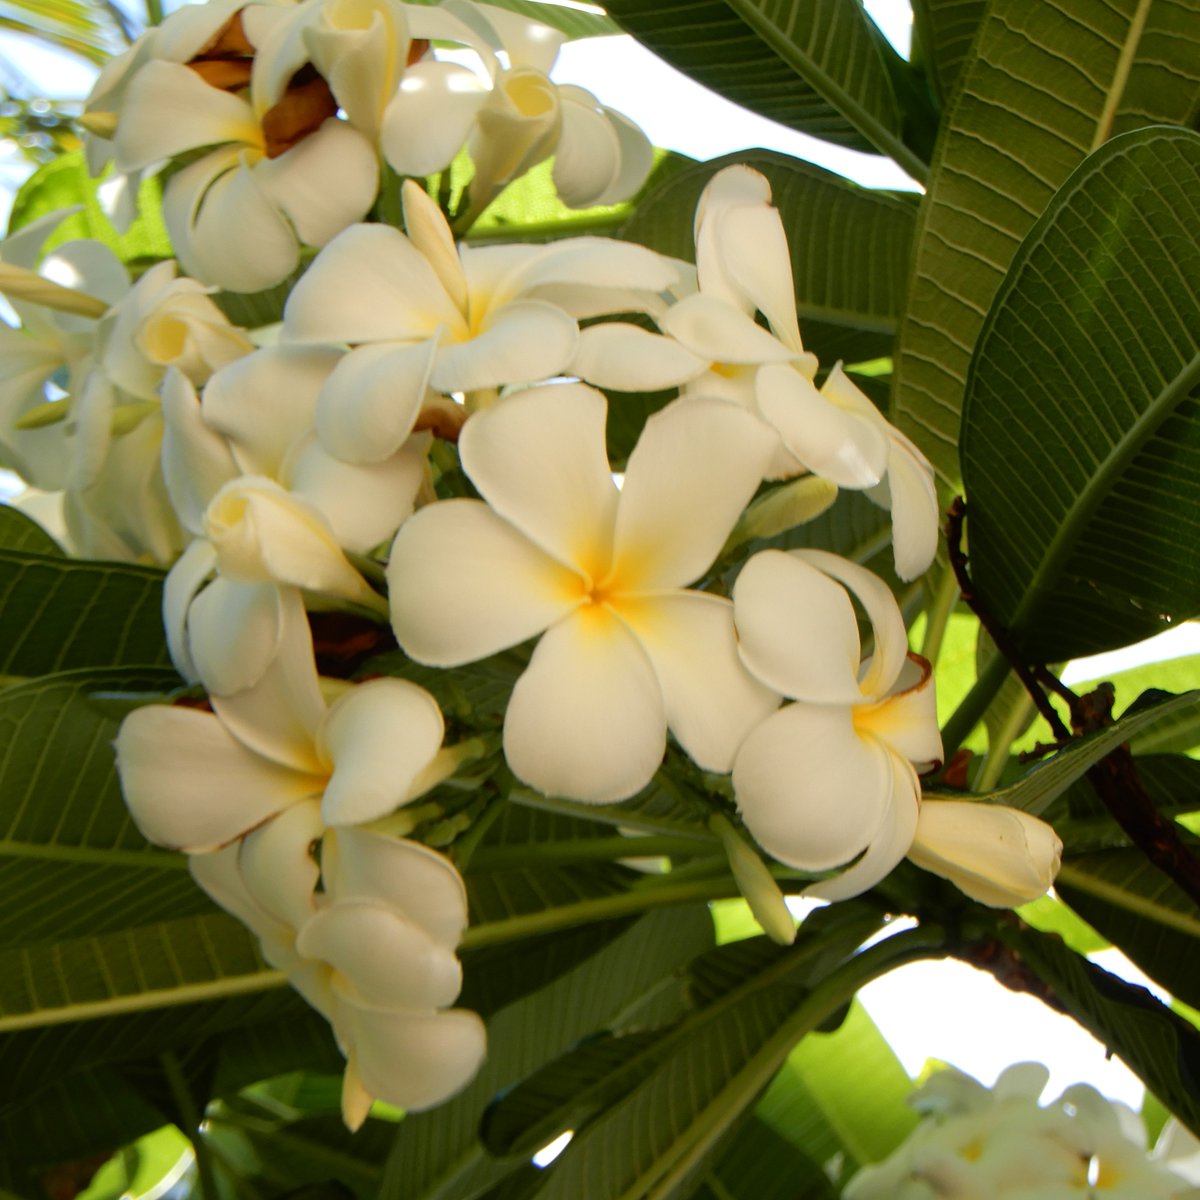 Susie Honolulu Hawaii Plumeria Singapore プルメリアの原産地はメキシコ 中央アメリカ カリブ海 ハワイ には１８６０年にドイツ人医師ウィリアム ヒレブランドが持ち込んだそうです ワイキキでよく見かける品種シンガポールは白い花の中心部が